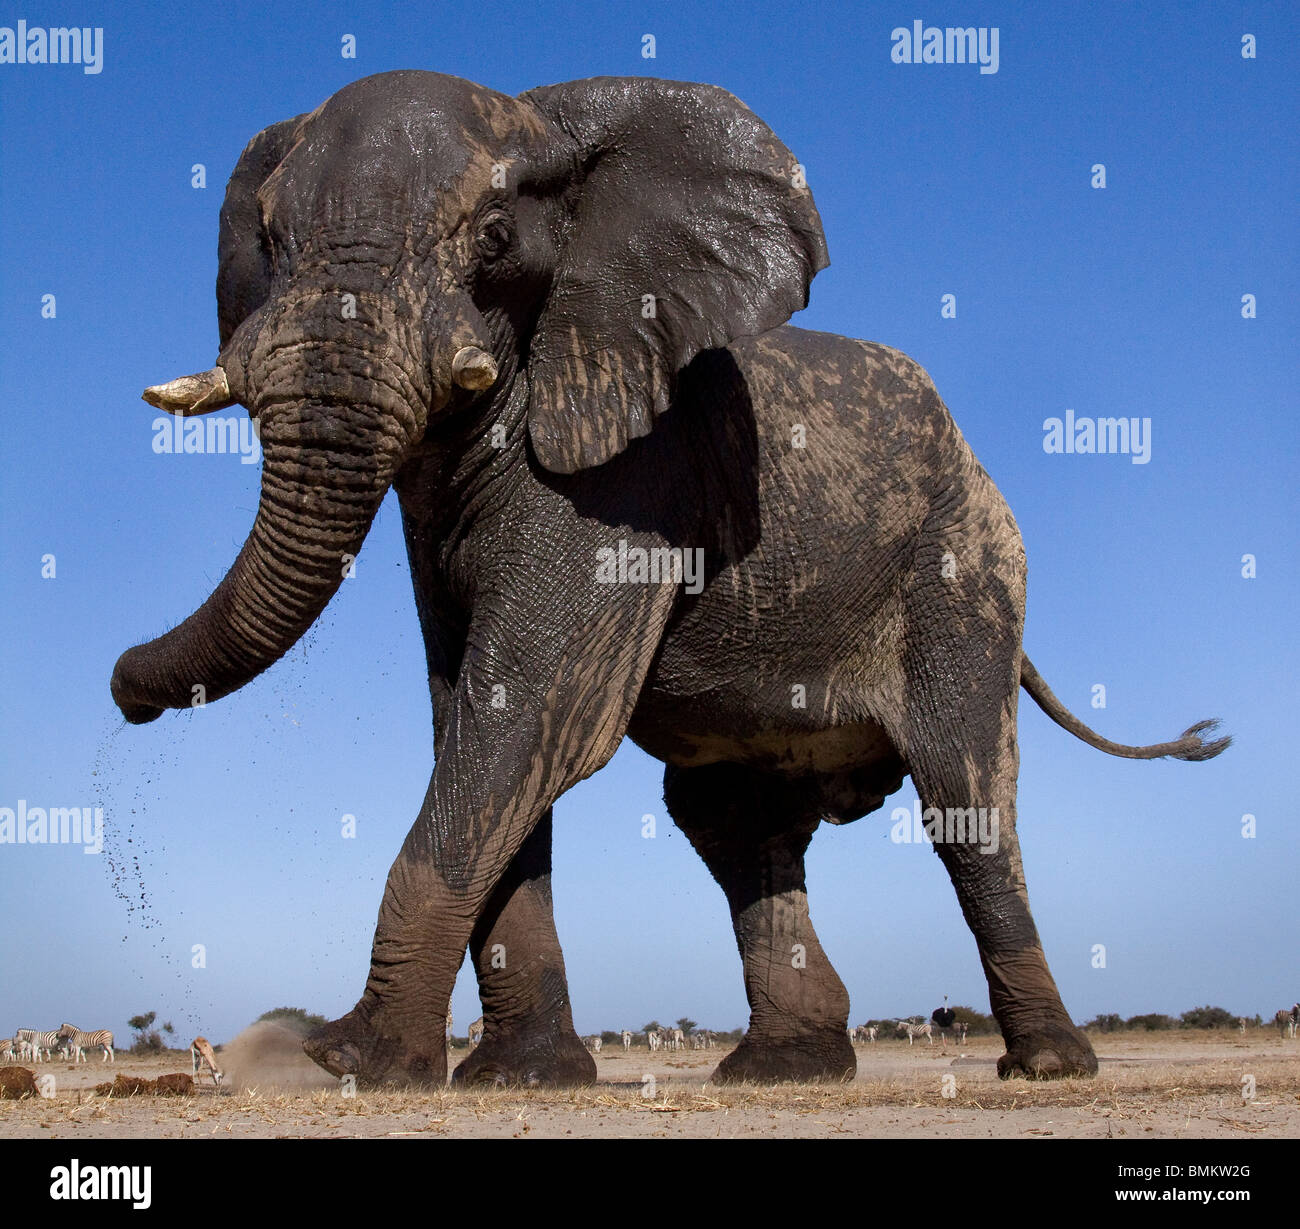 Elefante de ángulo bajo, Pan de Etosha, Namibia Foto de stock